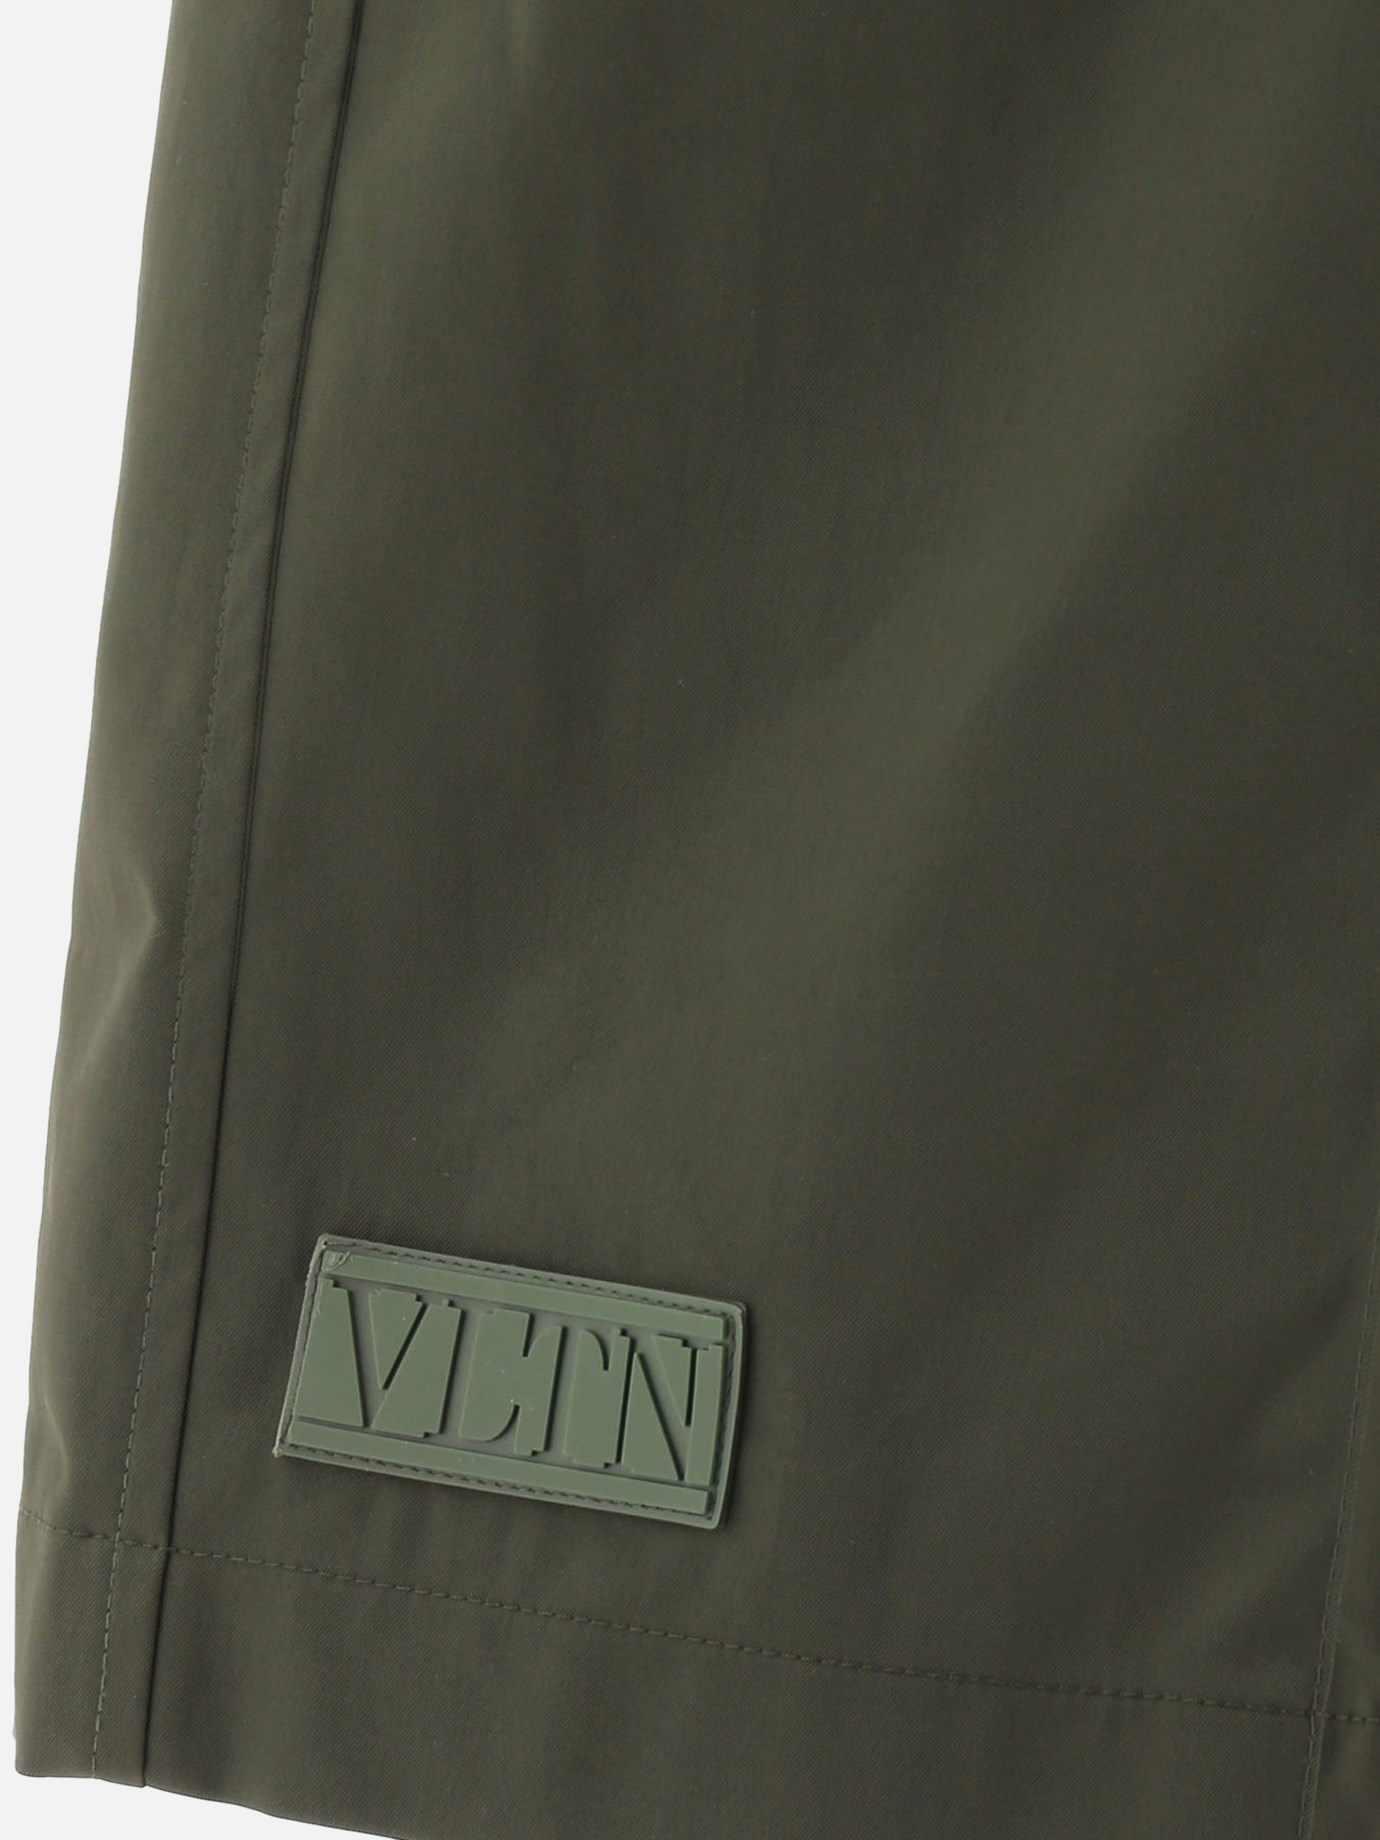 Nylon bermuda shorts by Valentino